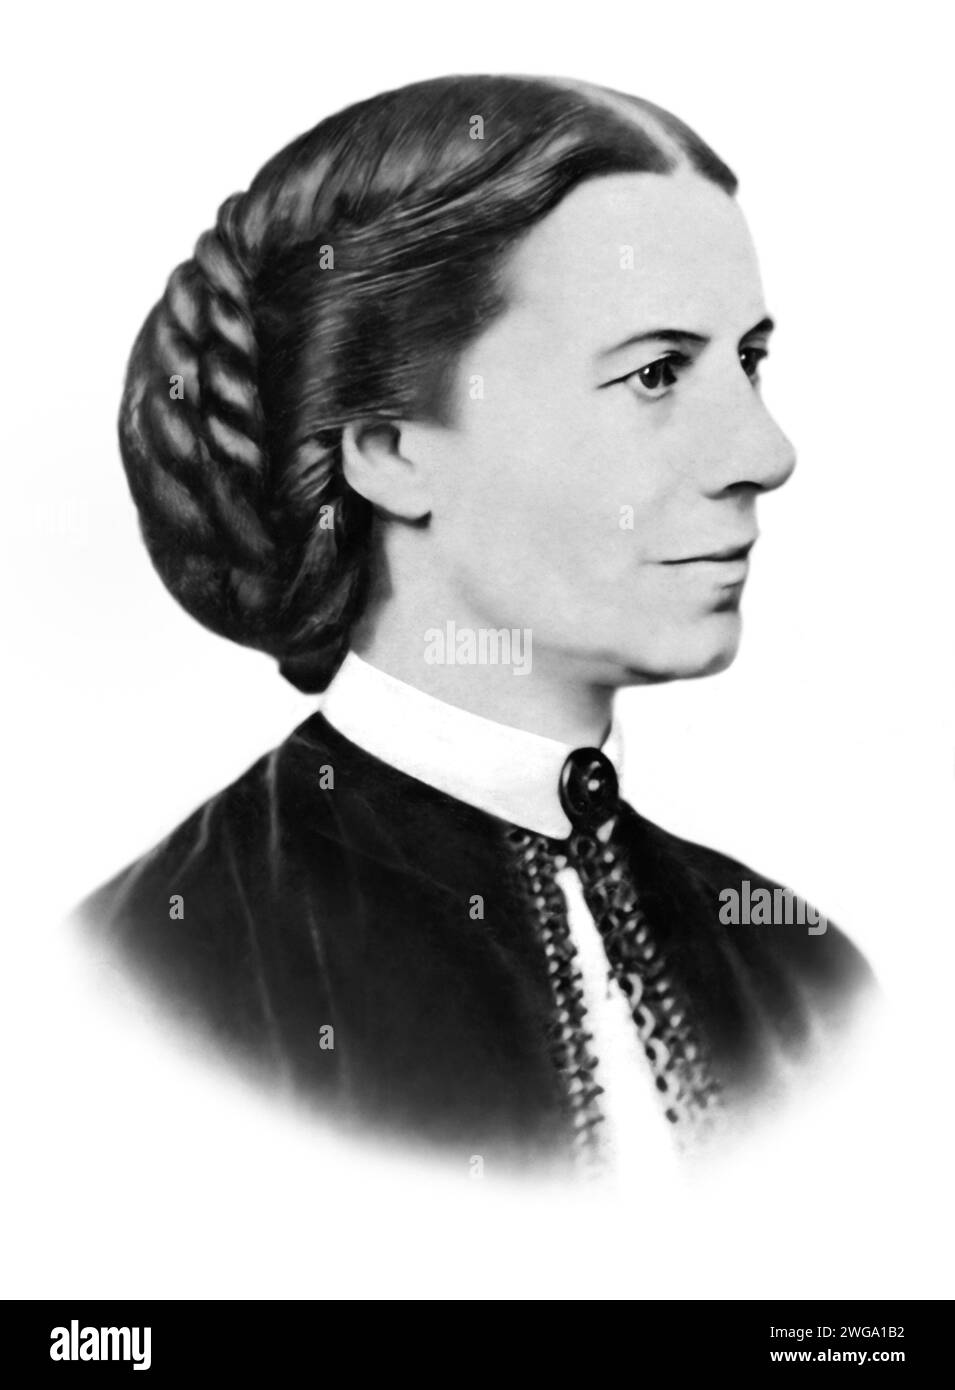 Clara (Clarissa Harlowe) Barton (1821-1912), infirmière autodidacte américaine qui a fondé la Croix-Rouge américaine. Banque D'Images